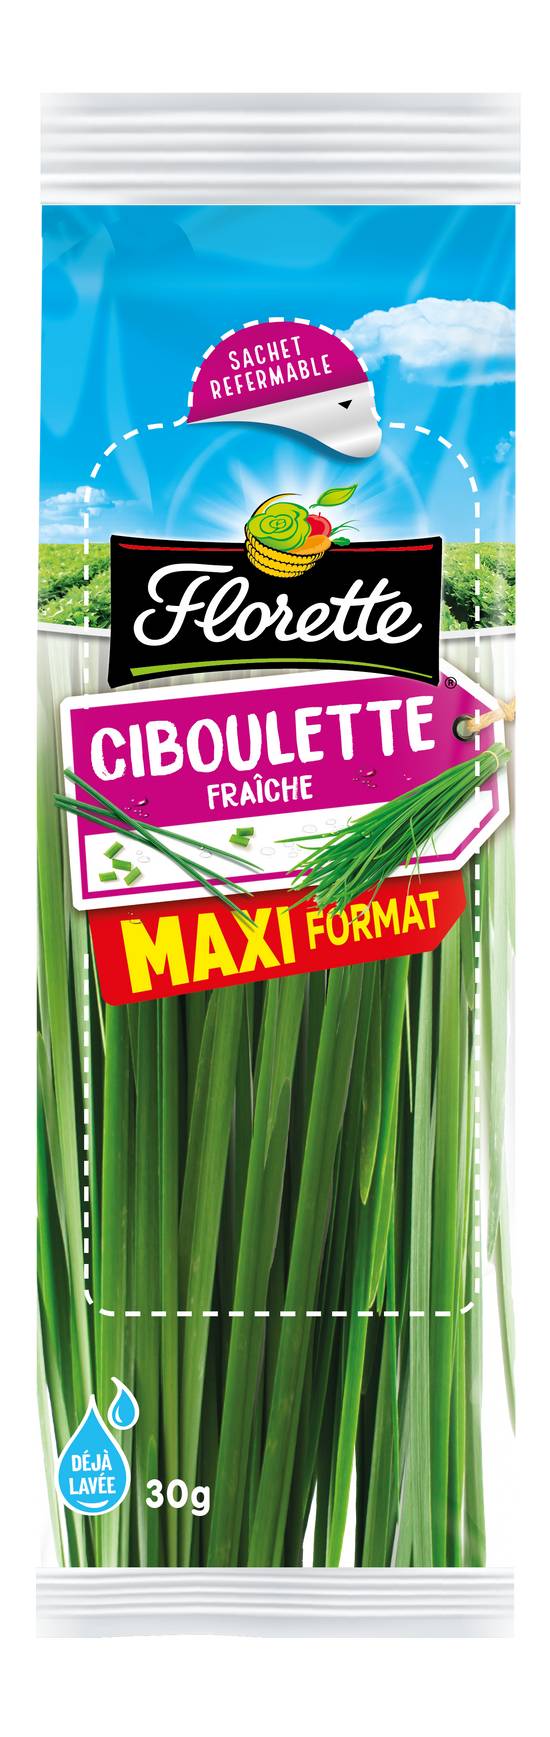 Florette - Ciboulette déjà lavée